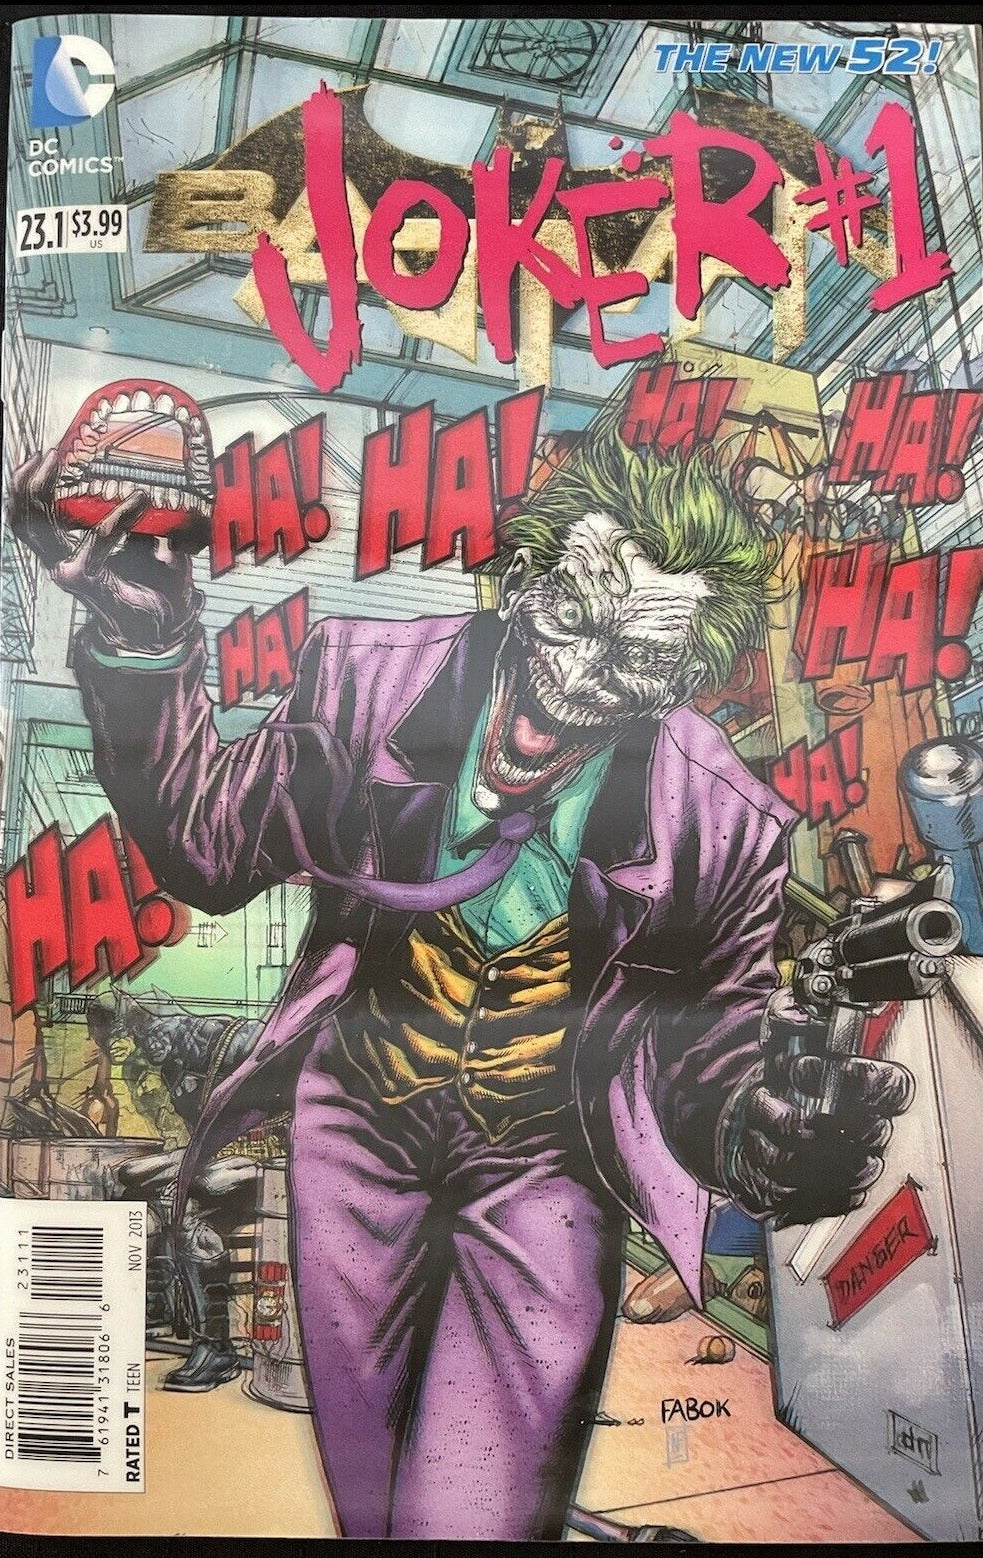 JOKER # 1 BATMAN  # 23.1 DC COMICS 3D LENTICULAR COVER VARIANT COMIC BOOK 2013